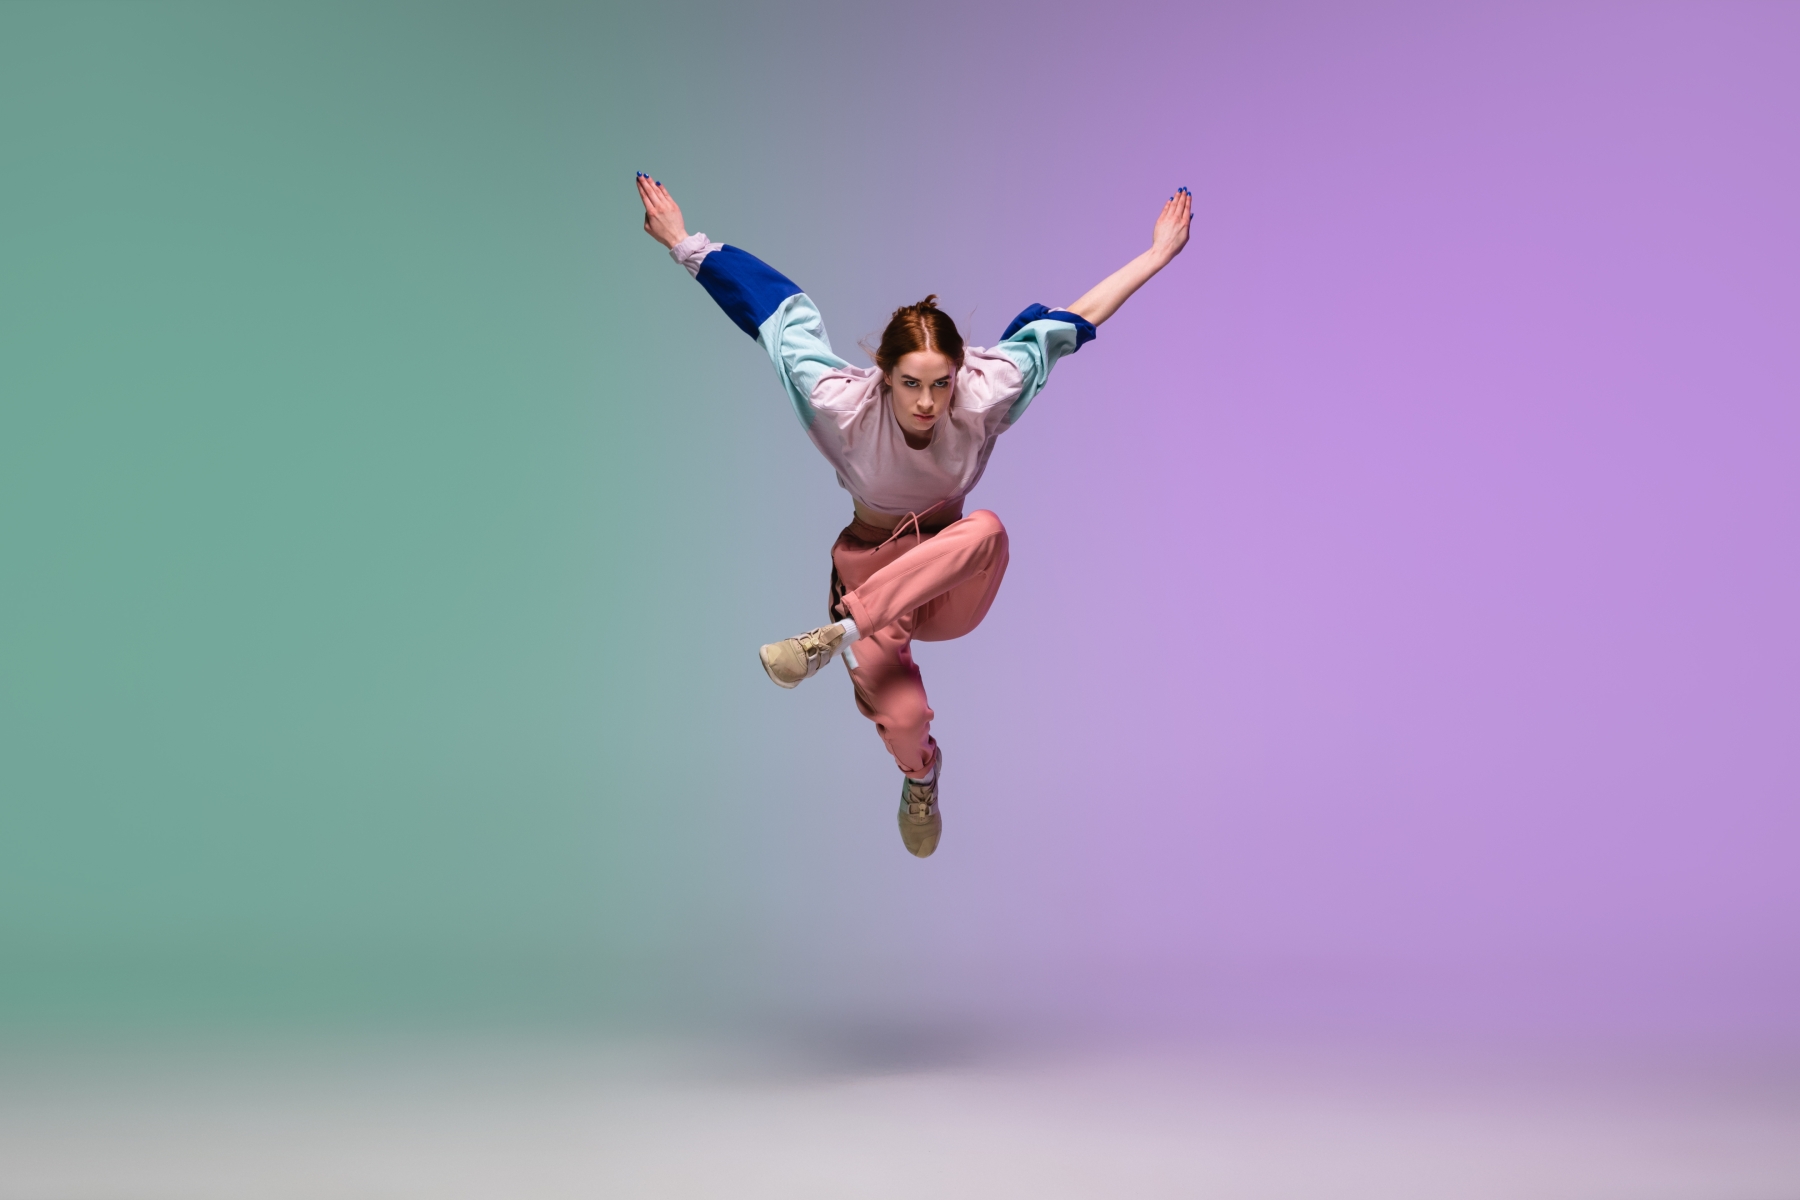 Kvinna som dansar i hiphop-stil med grön och lila bakgrund